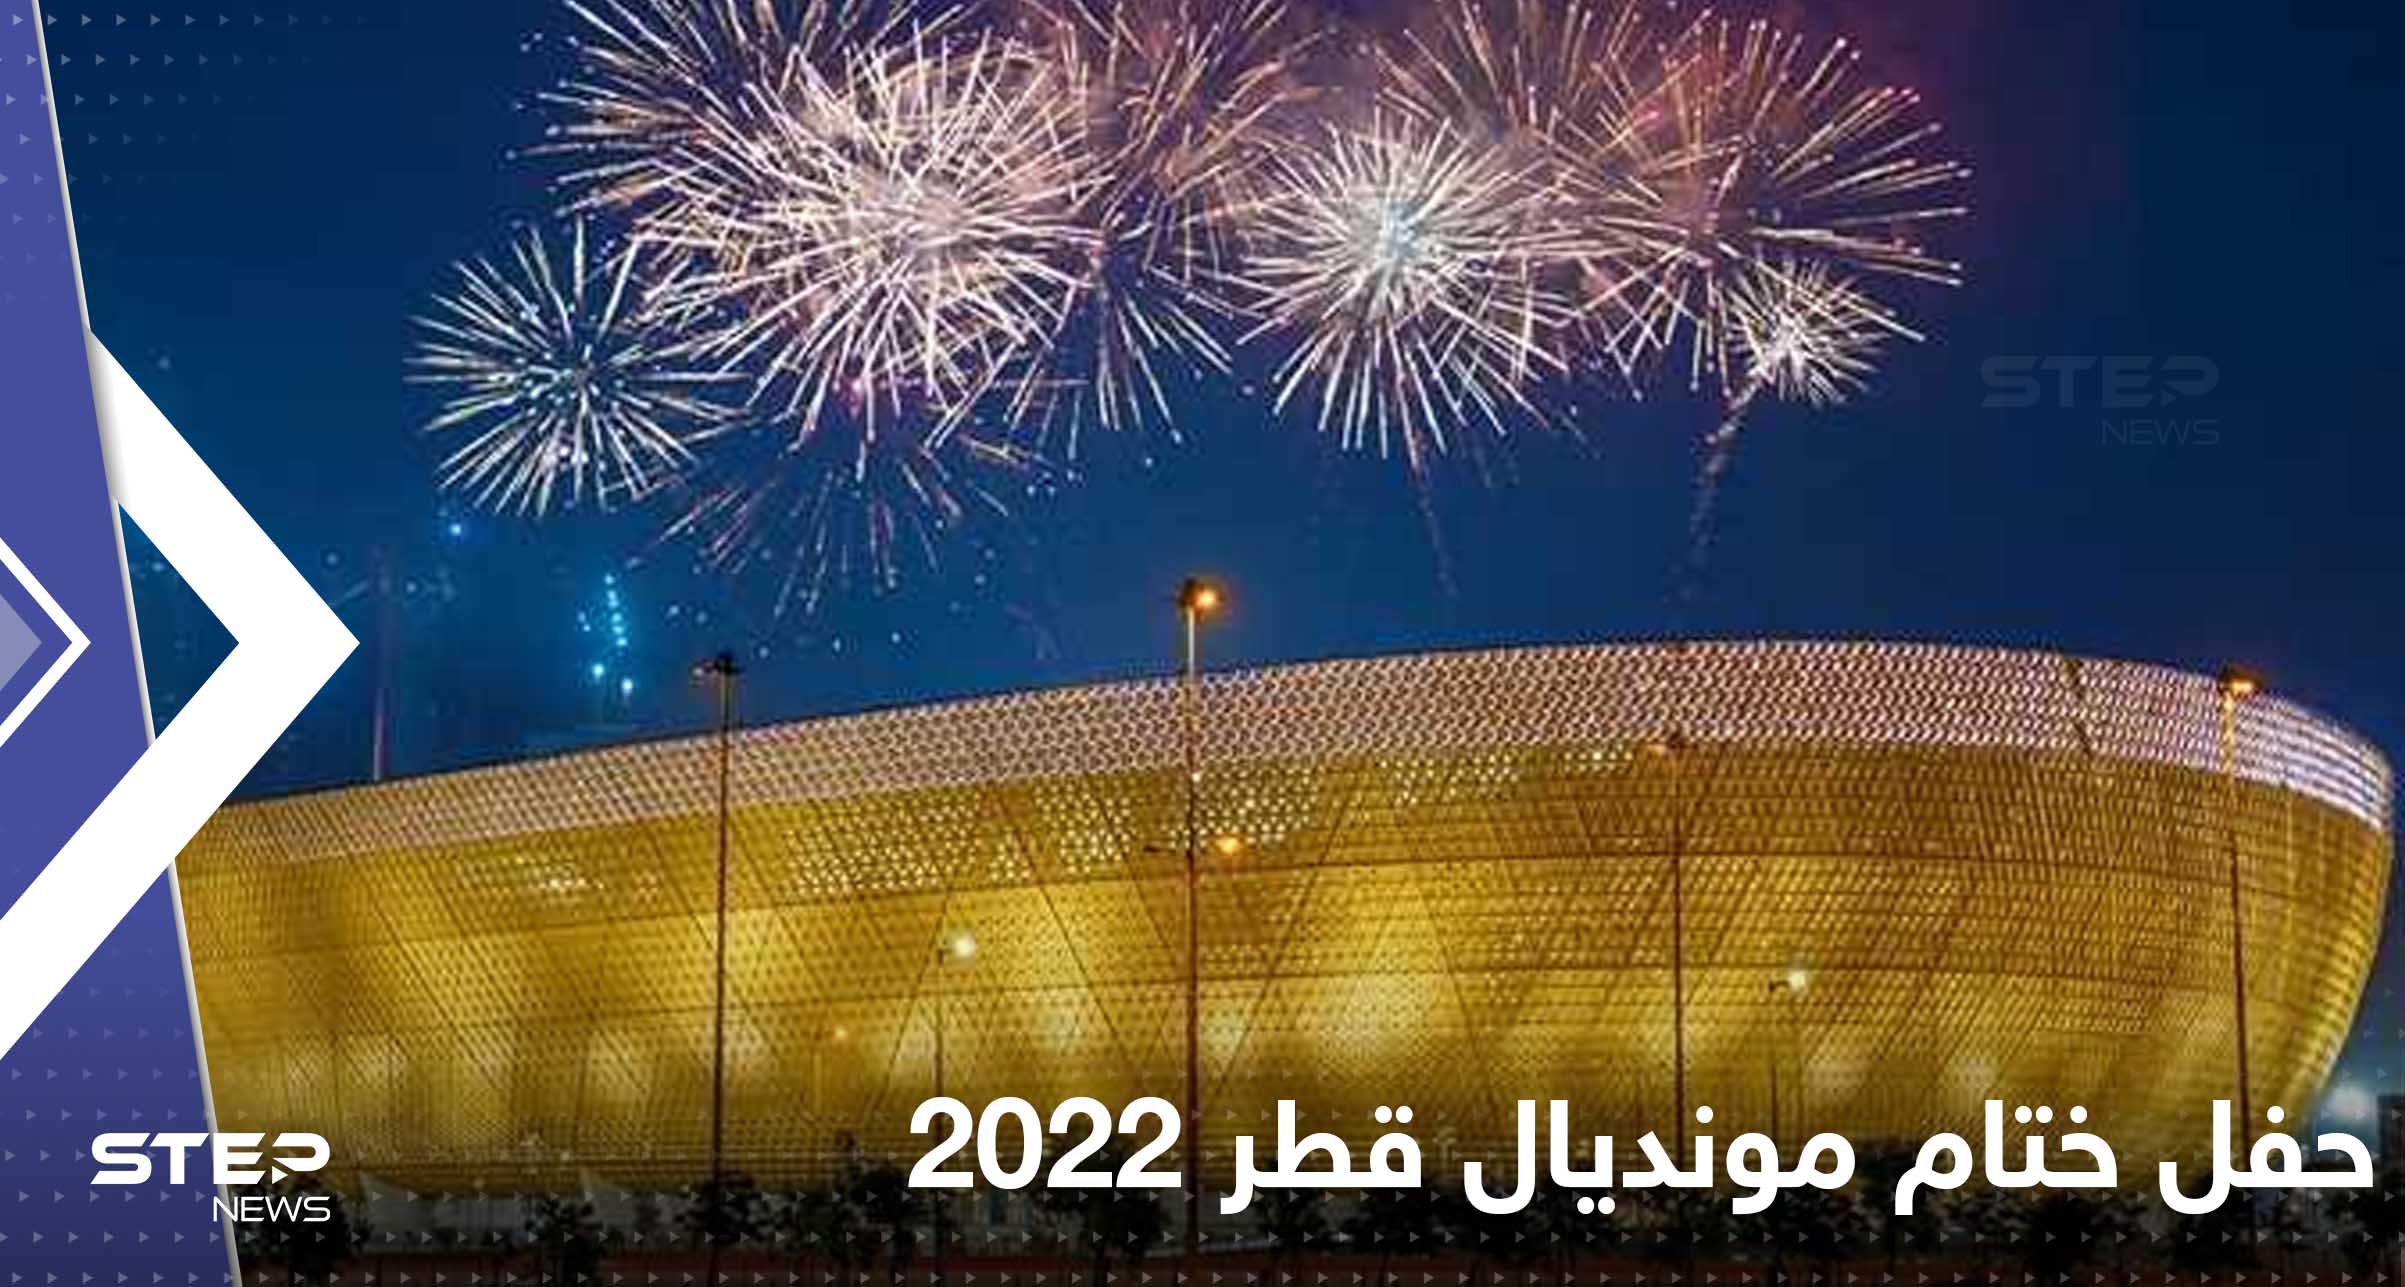 فيفا يكشف تفاصيل حفل ختام مونديال قطر 2022